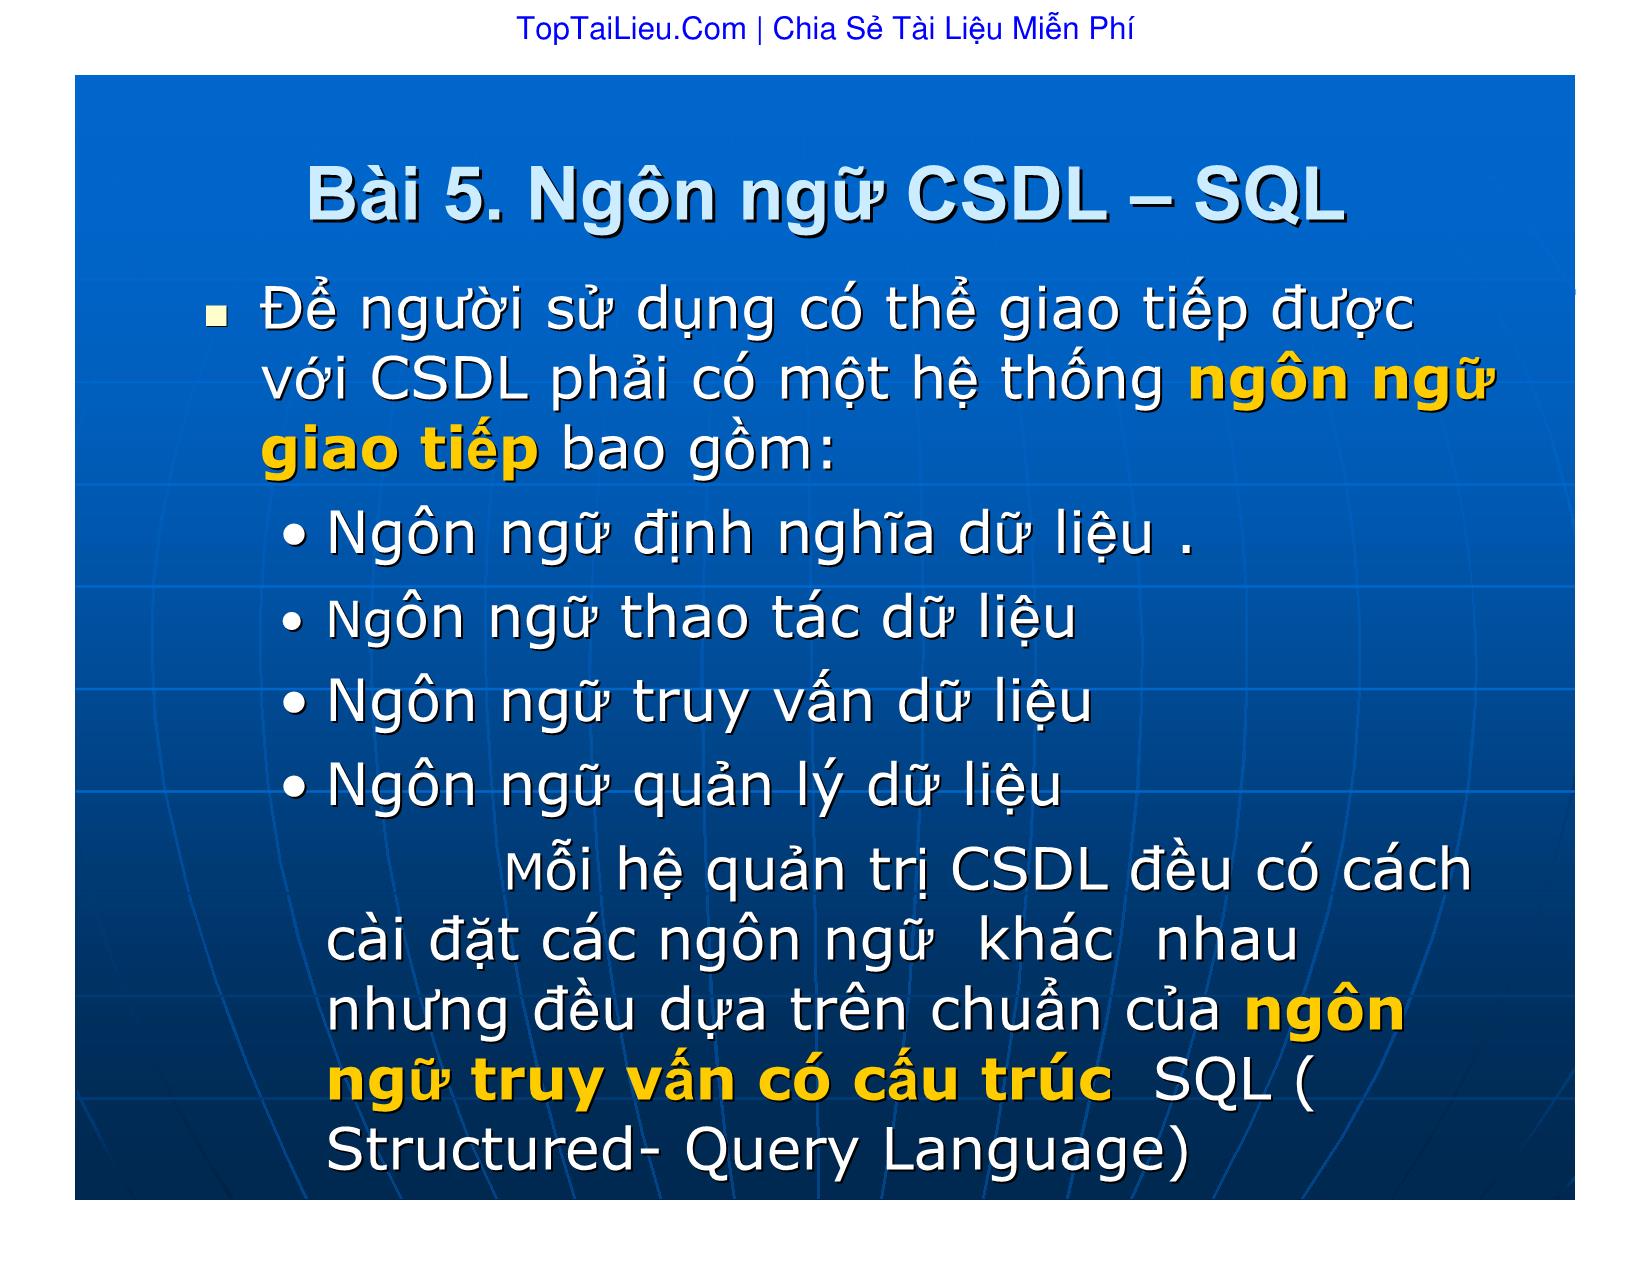 Bài giảng Cơ sở dữ liệu - Bài 5: Ngôn ngữ cơ sỏ dữ liệu. SQL - Vũ Văn Định trang 1